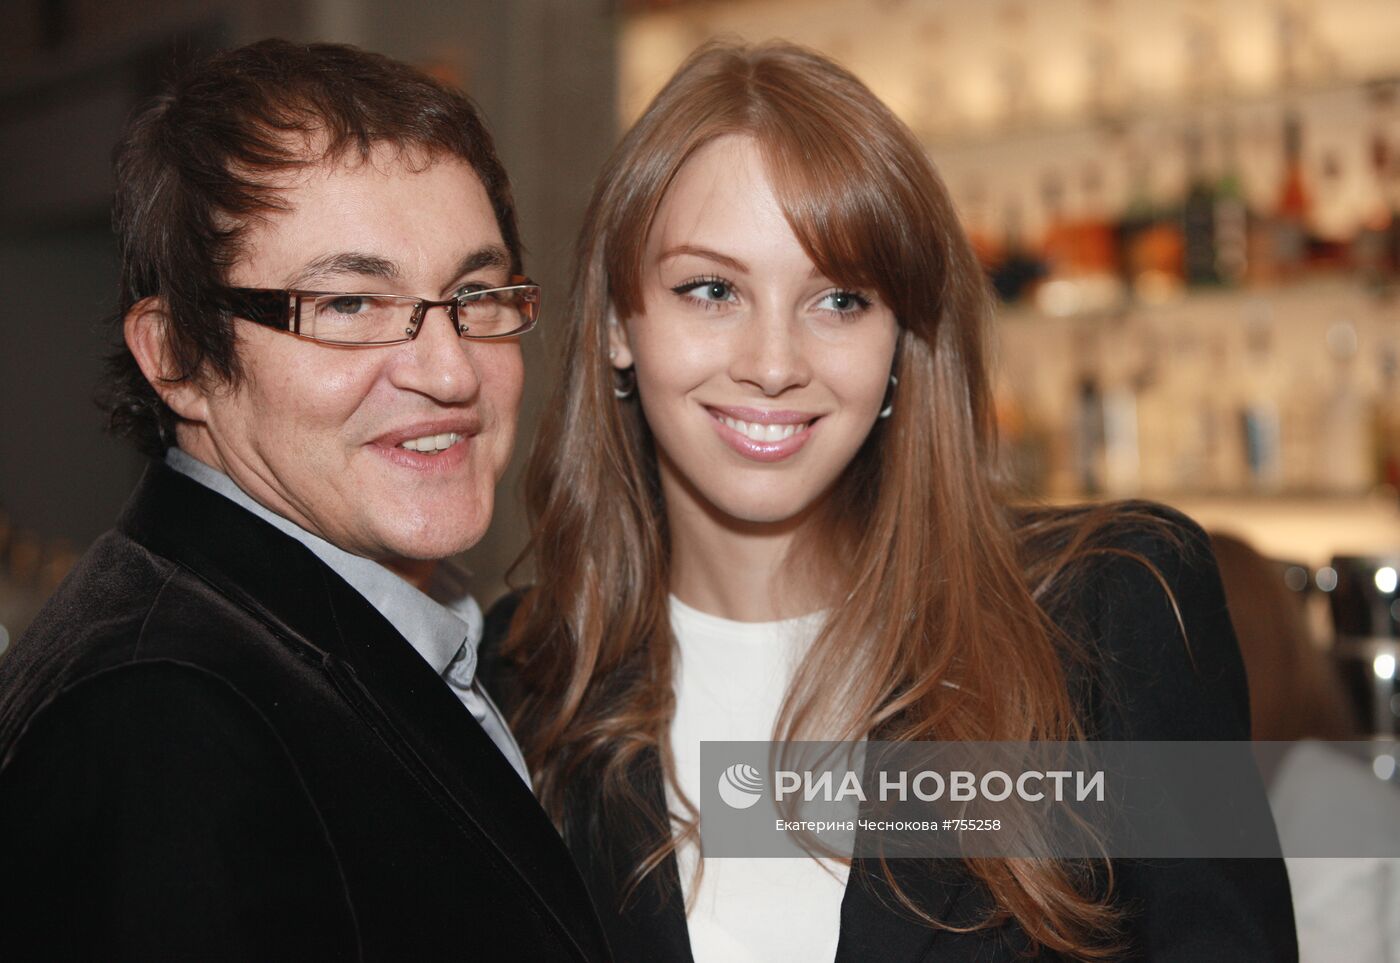 Дмитрий Дибров с супругой Полиной Наградовой